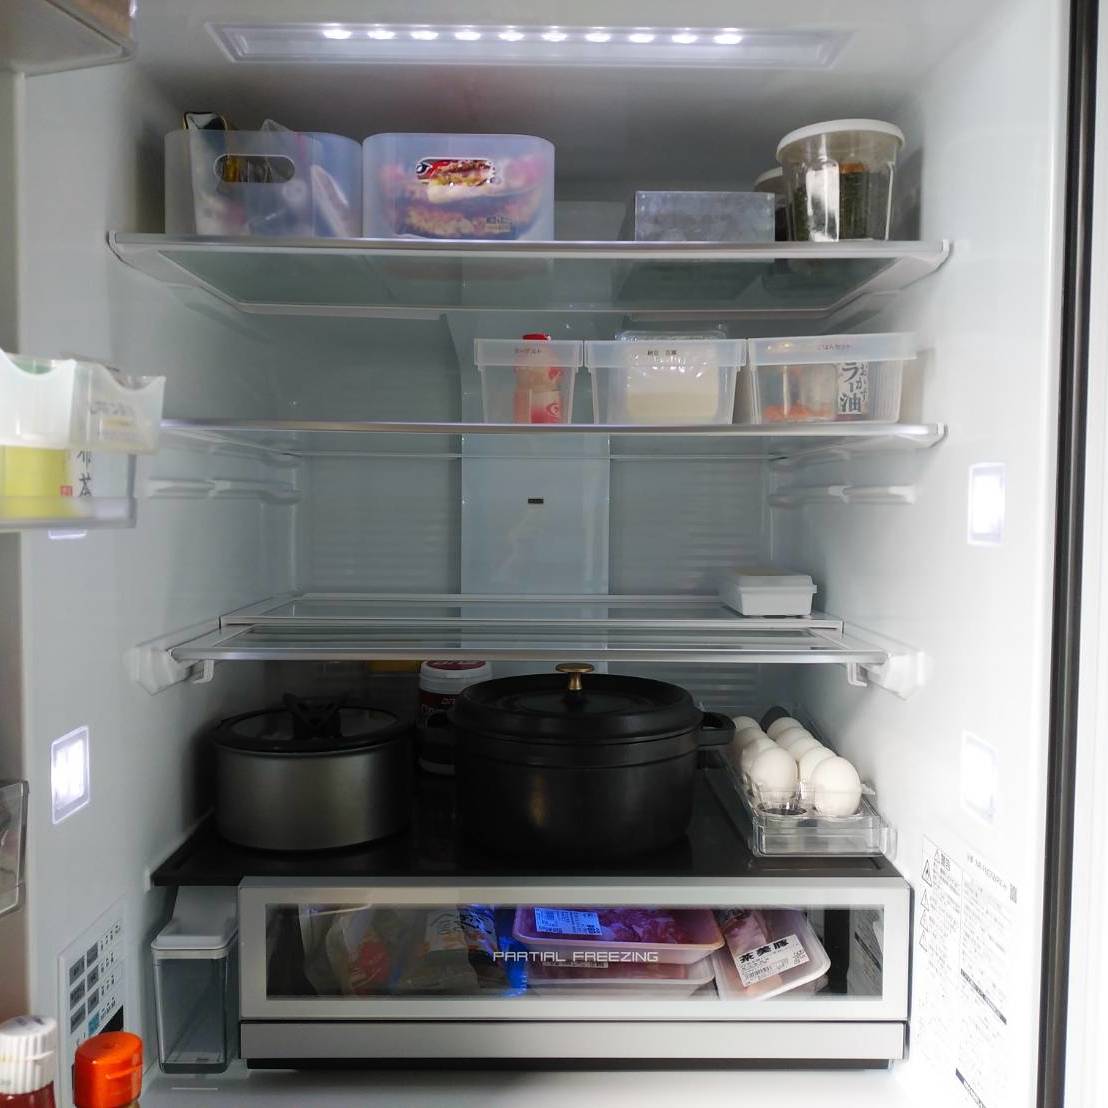  誰でもすぐマネできる100均アイテムを使った“冷蔵庫収納術” 